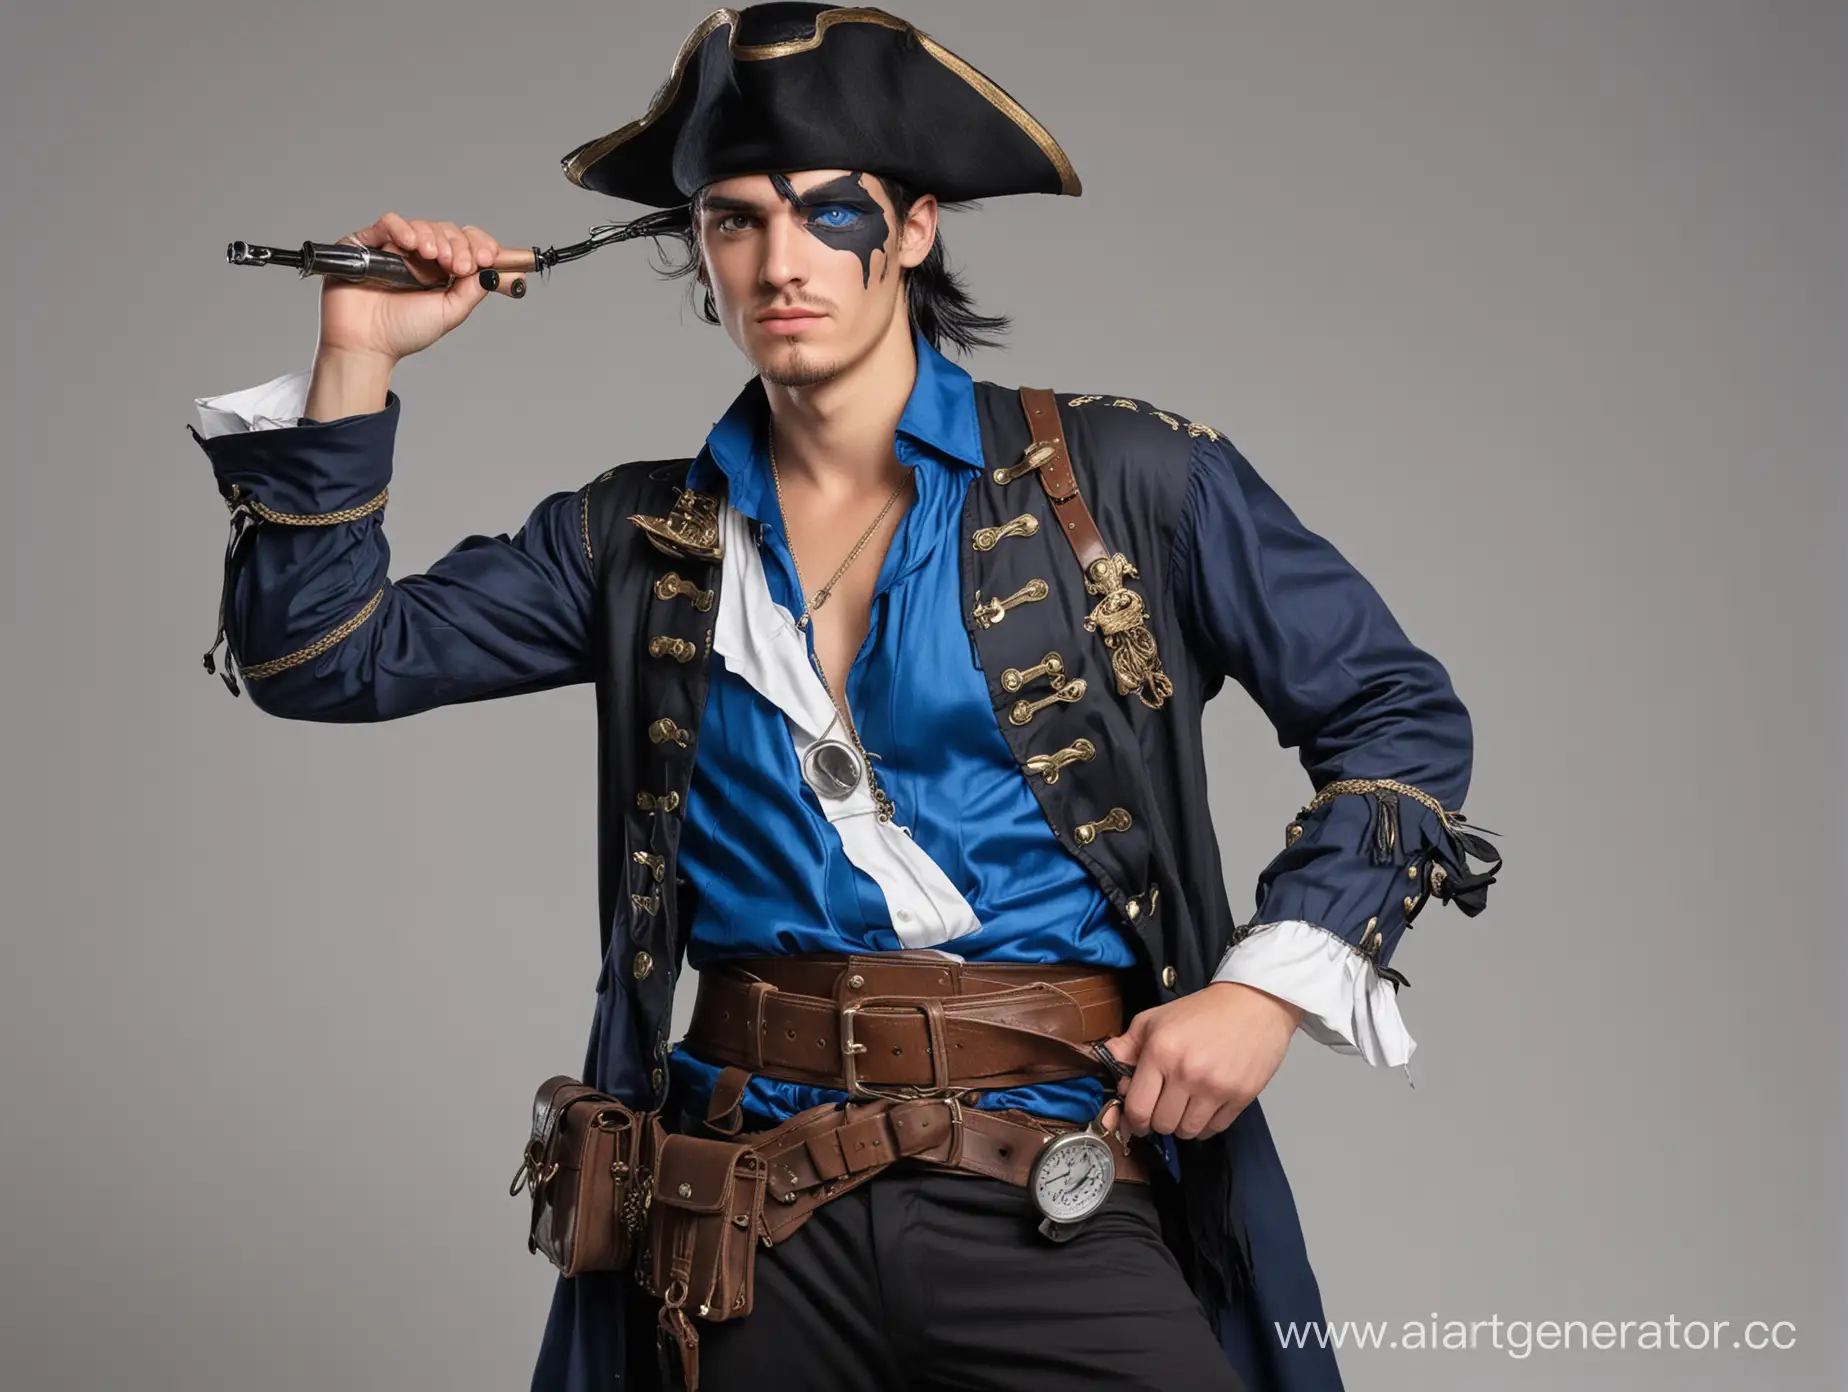 Парень пират лет 18-20,  с чёрными волосами которые опускаются с одной стороны закрывая один глаз, без хвоста, в чёрно синем костюме, с медицинскими приборами на поясе